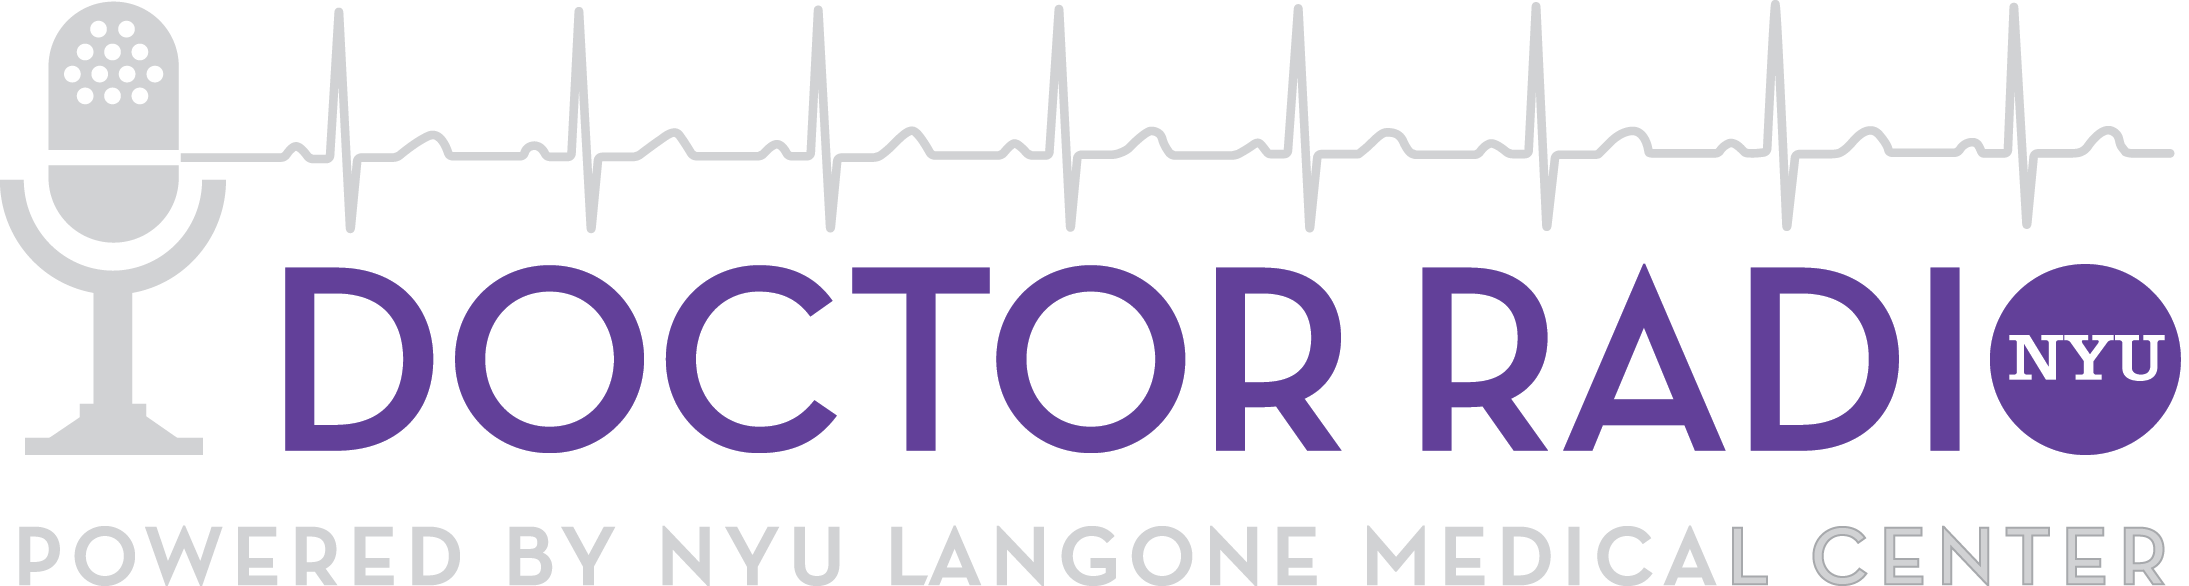 Login - Sirius Xm Doctor Radio Logo (2189x586), Png Download